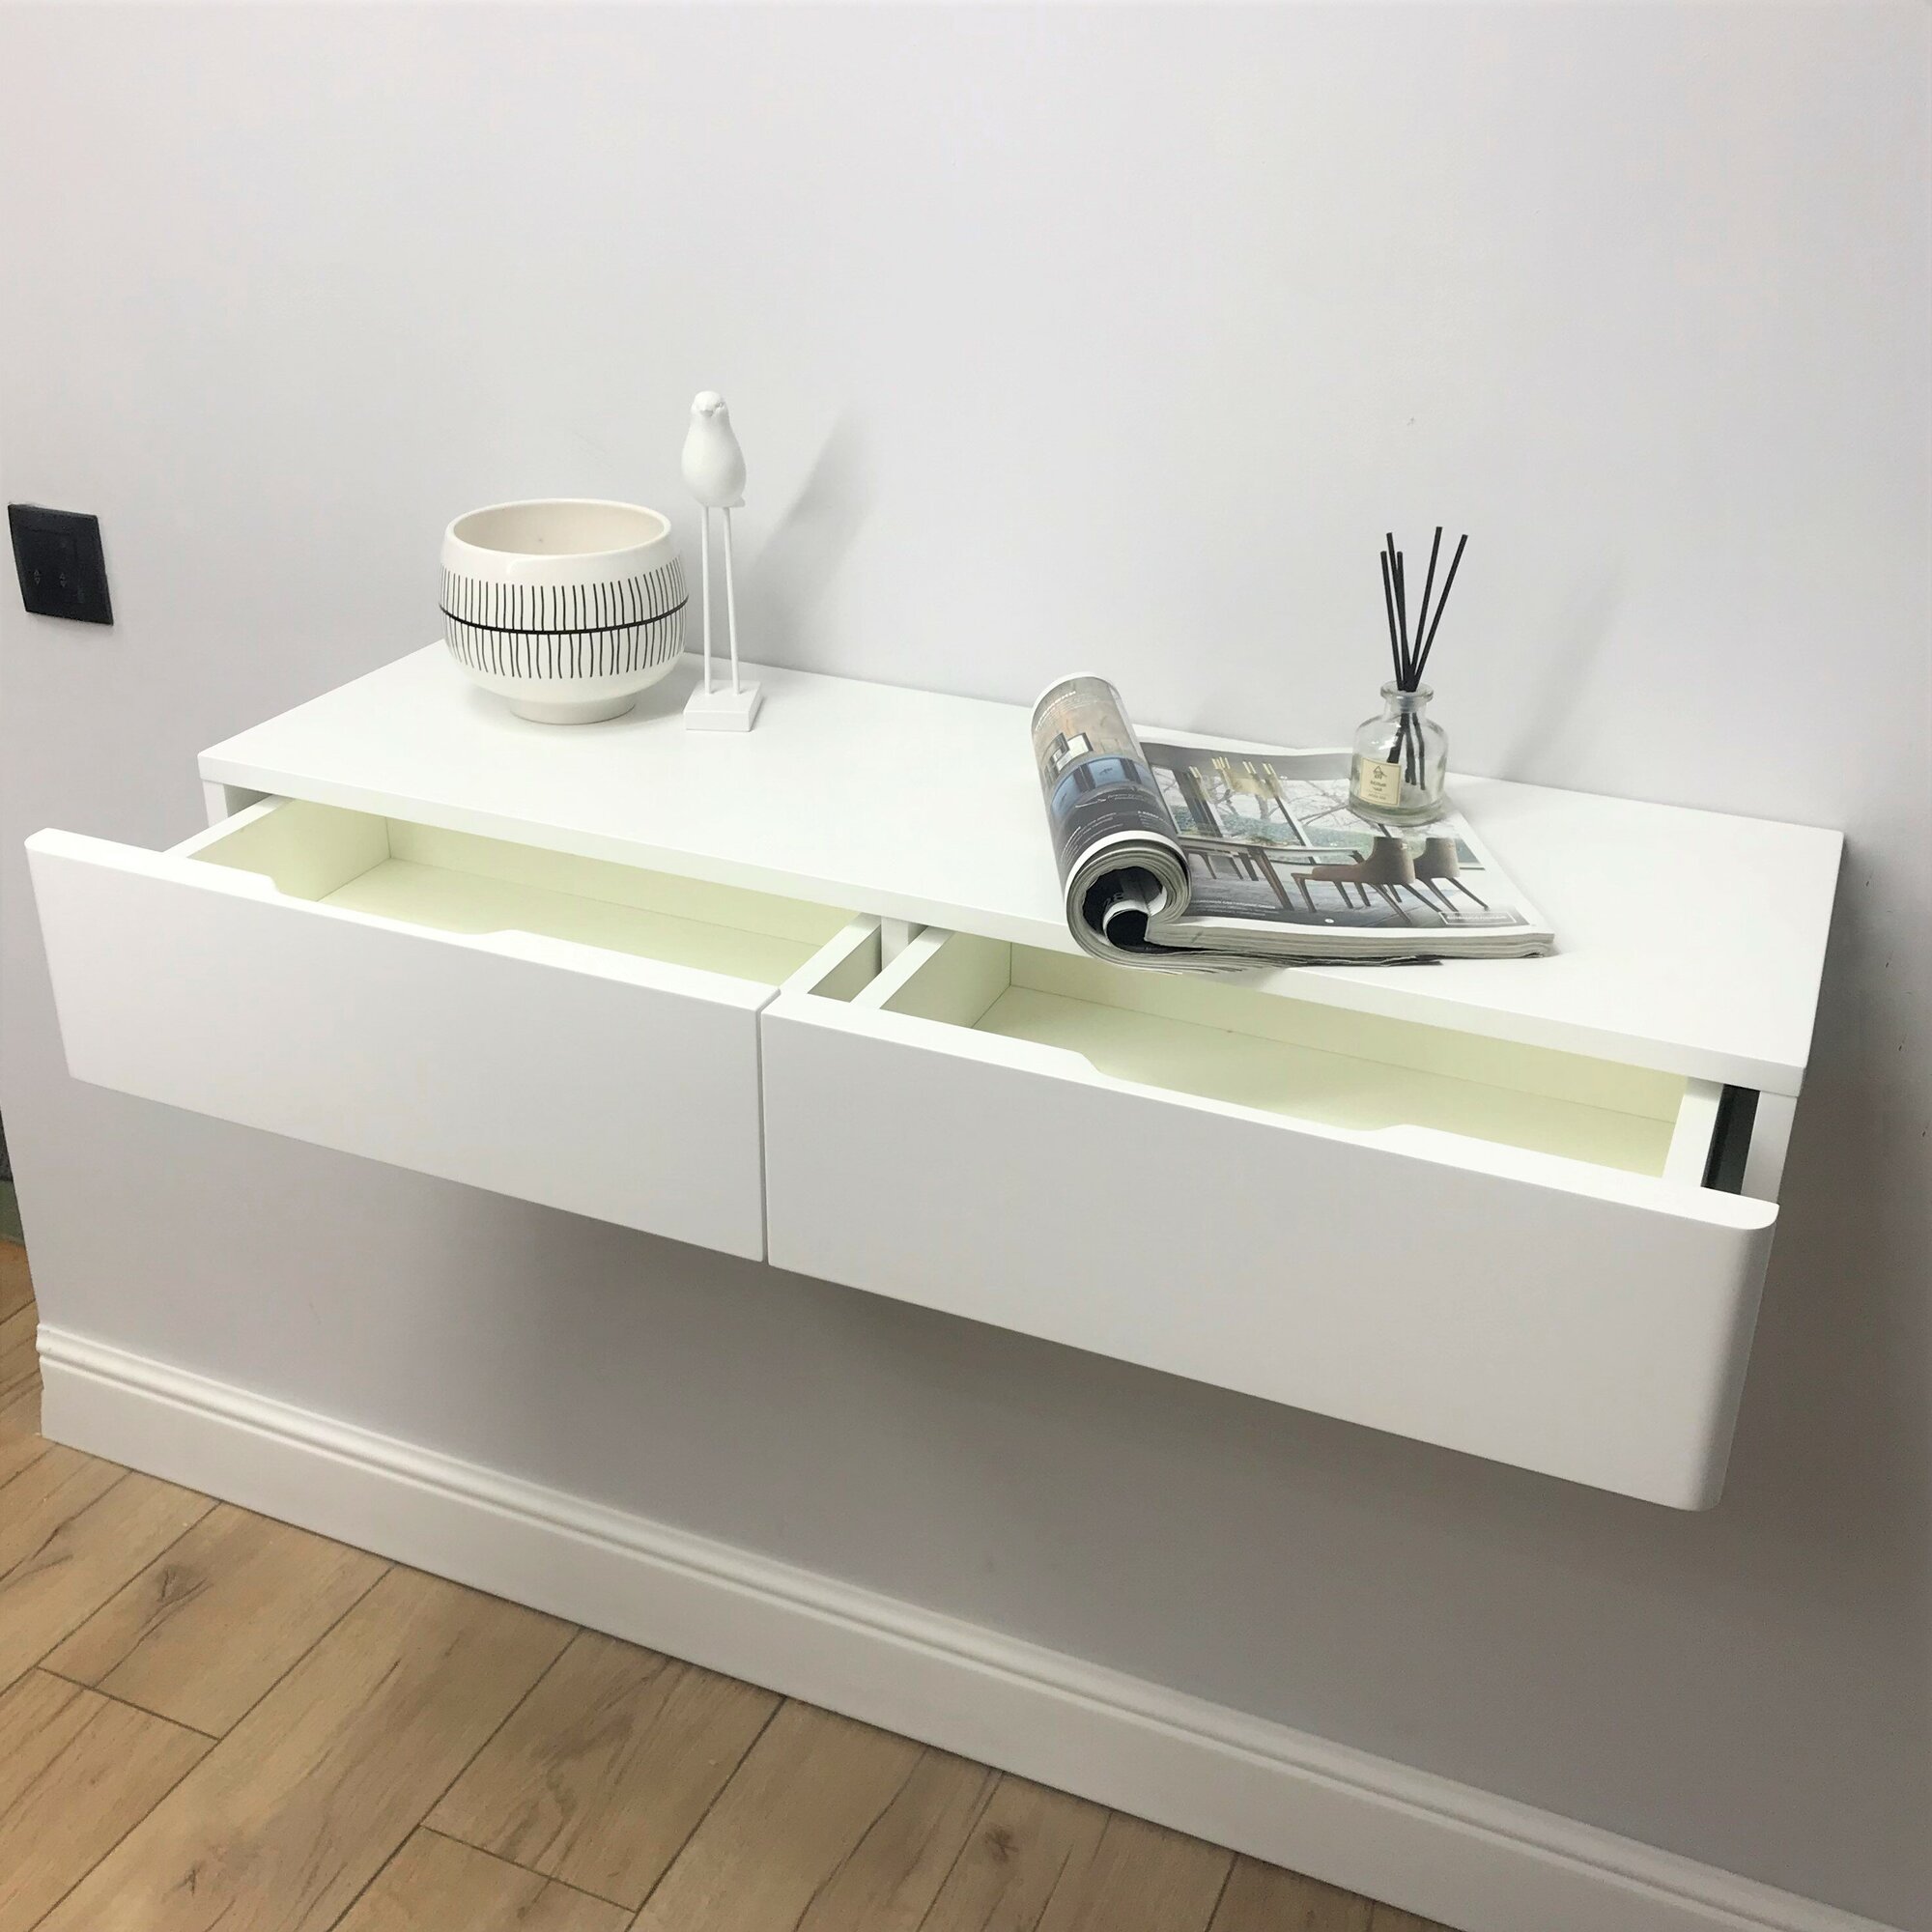 Туалетный столик в эмали подвесной, Bianko консольный столик, консоль навесная белая 100х32х16 см. Дизайнерская мебель Grande House - фотография № 5